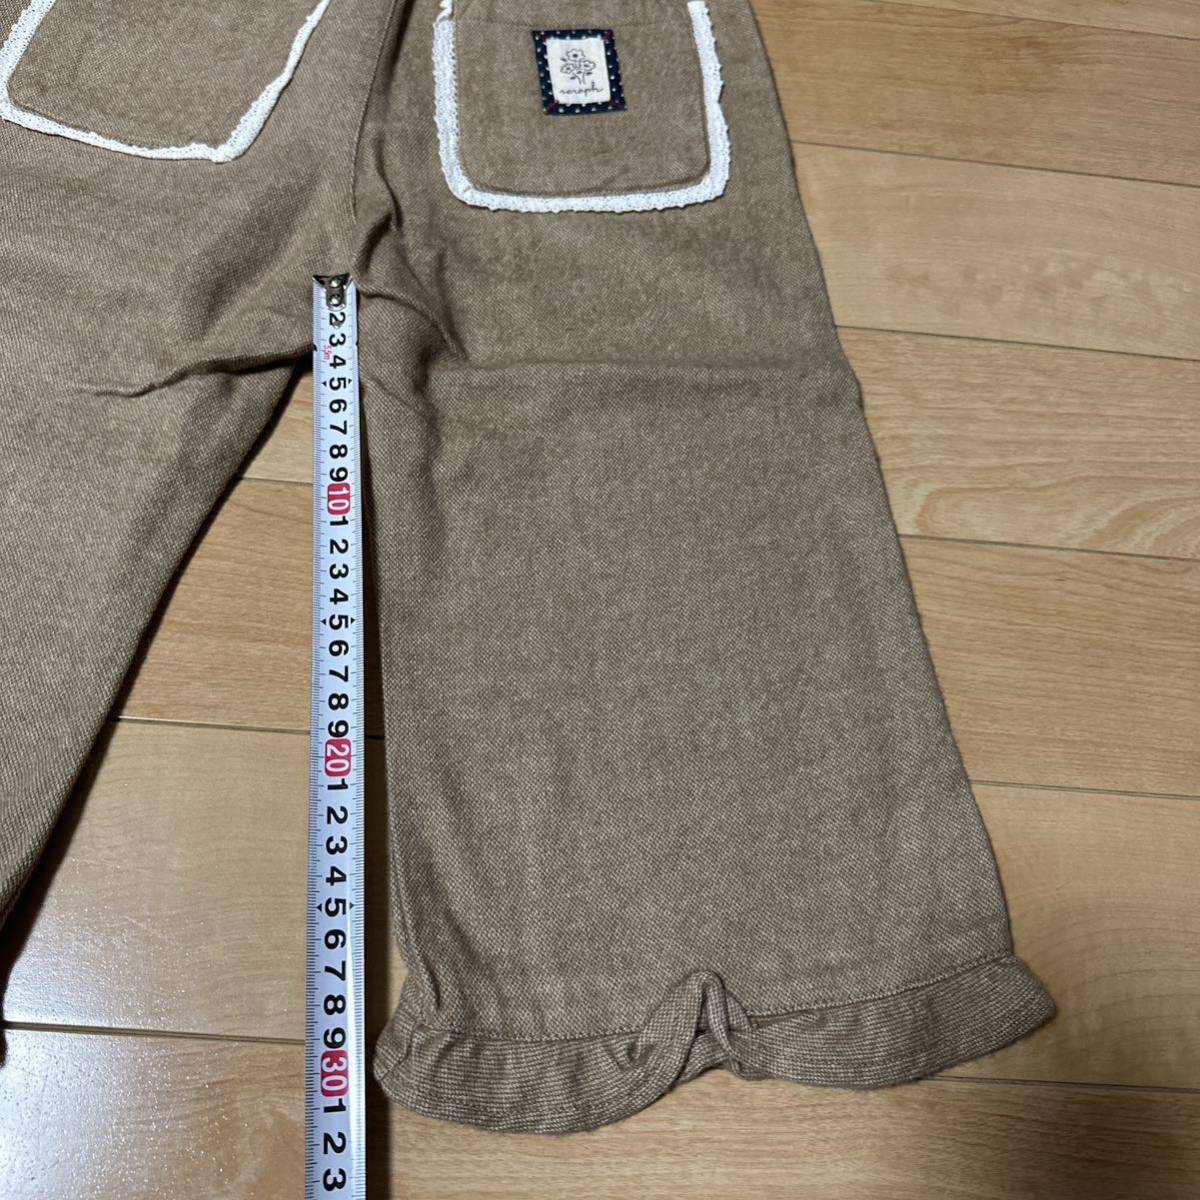  новый товар se черновой Seraph оборка широкий брюки 140 натуральный ga- Lee серия ковер mart Blanc shesa pre re прохладный 